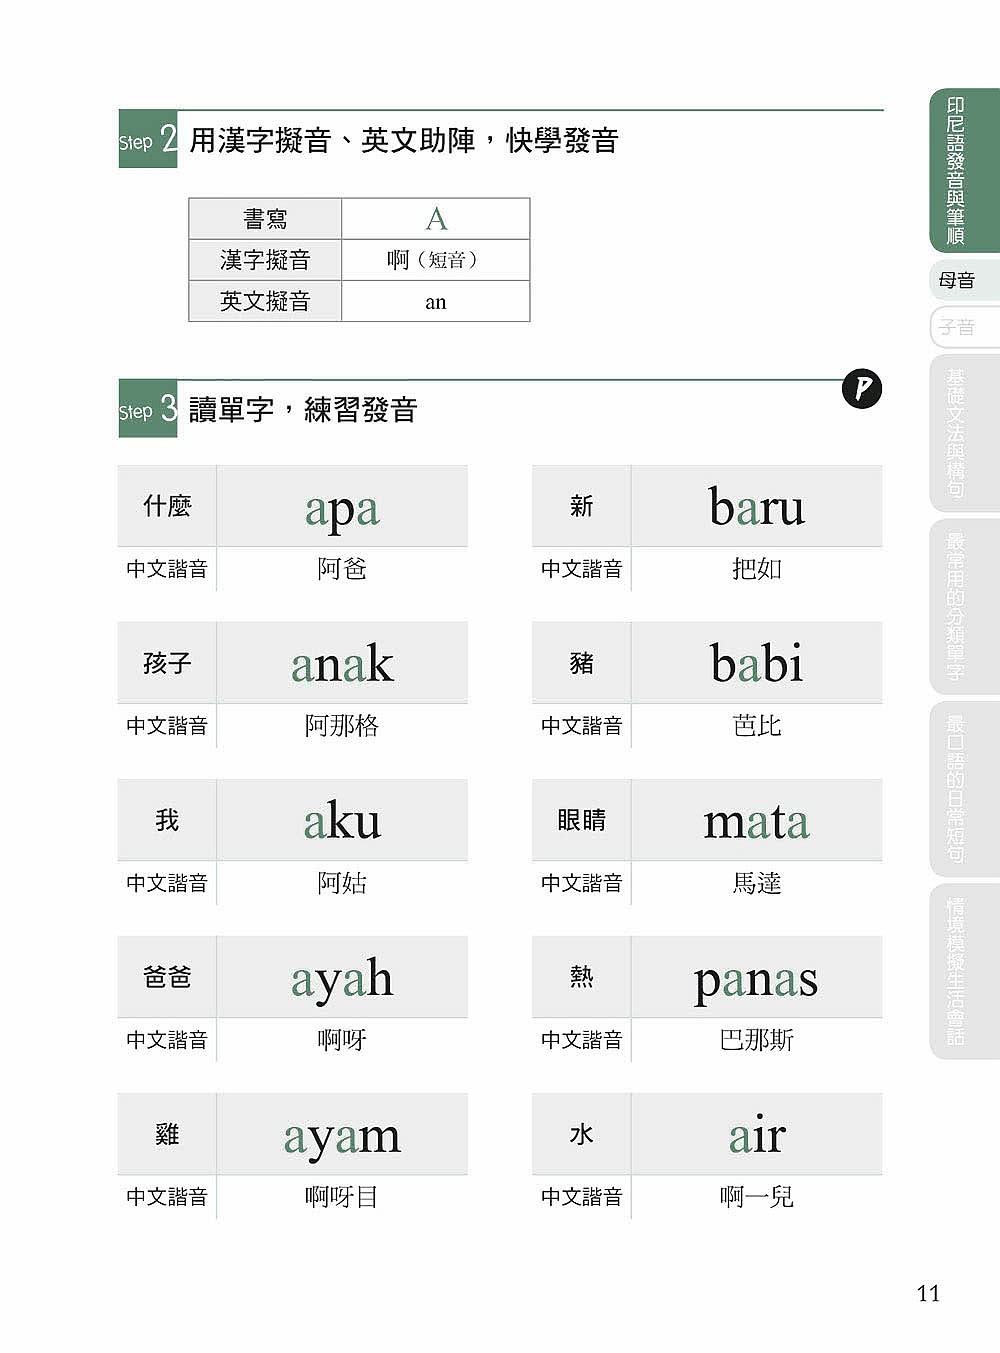 自學印尼語看完這本就能說！：專為華人設計的印尼語教材 字母＋單字＋會話＋文法一次學會！（附QR碼線上音